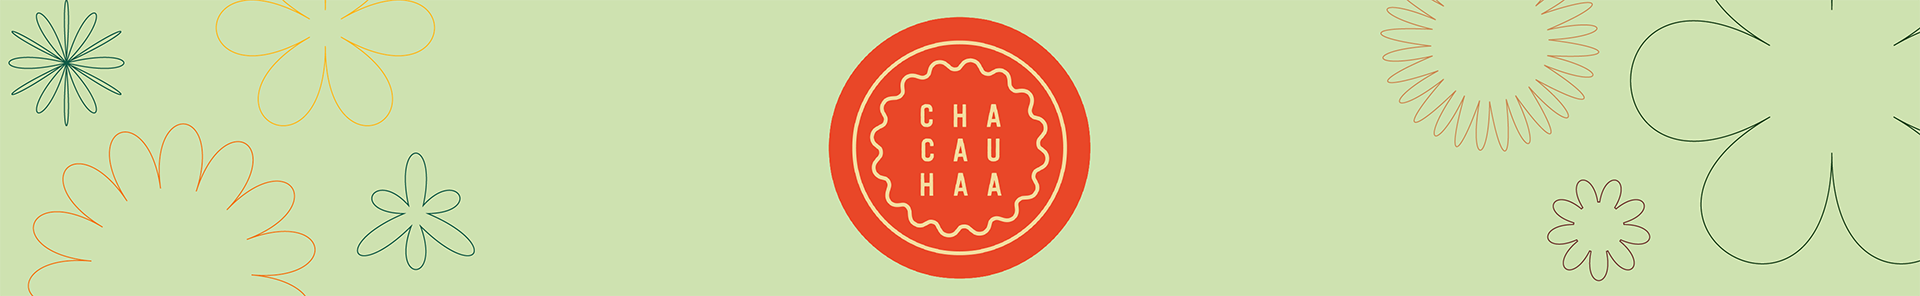 Chacauhaa